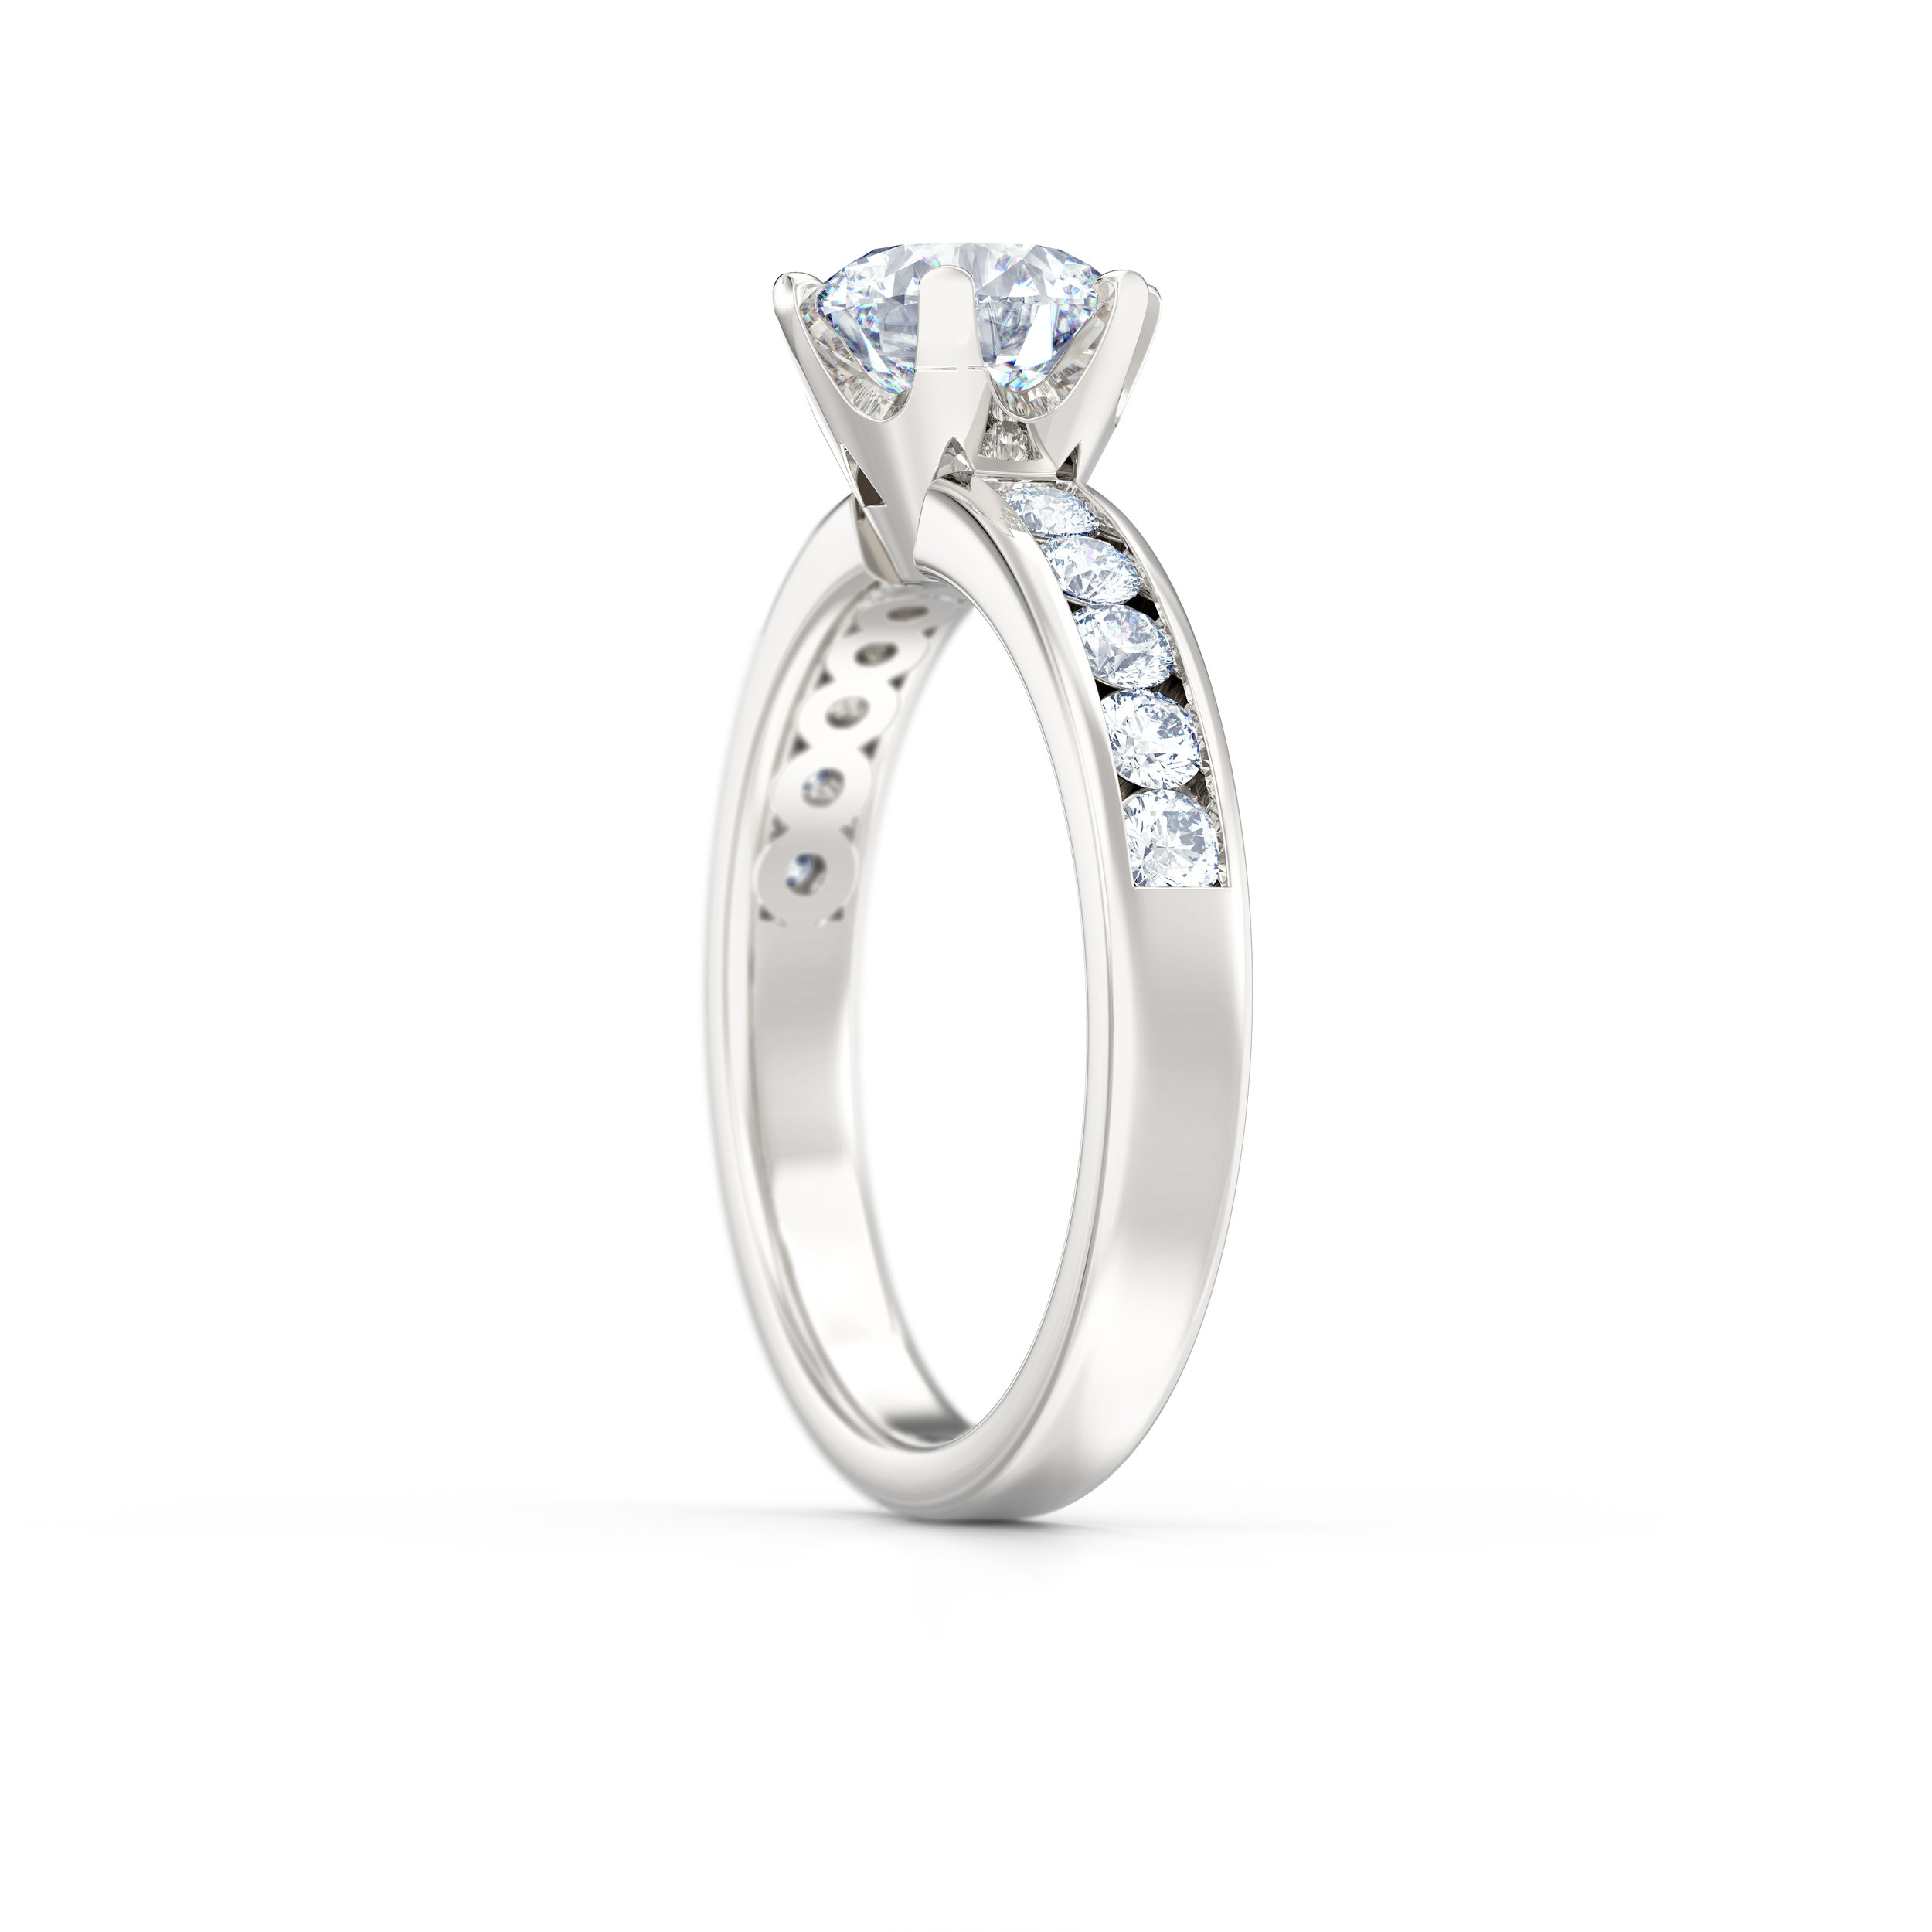 Brilliant cut channel set diamond shoulder engagement ring